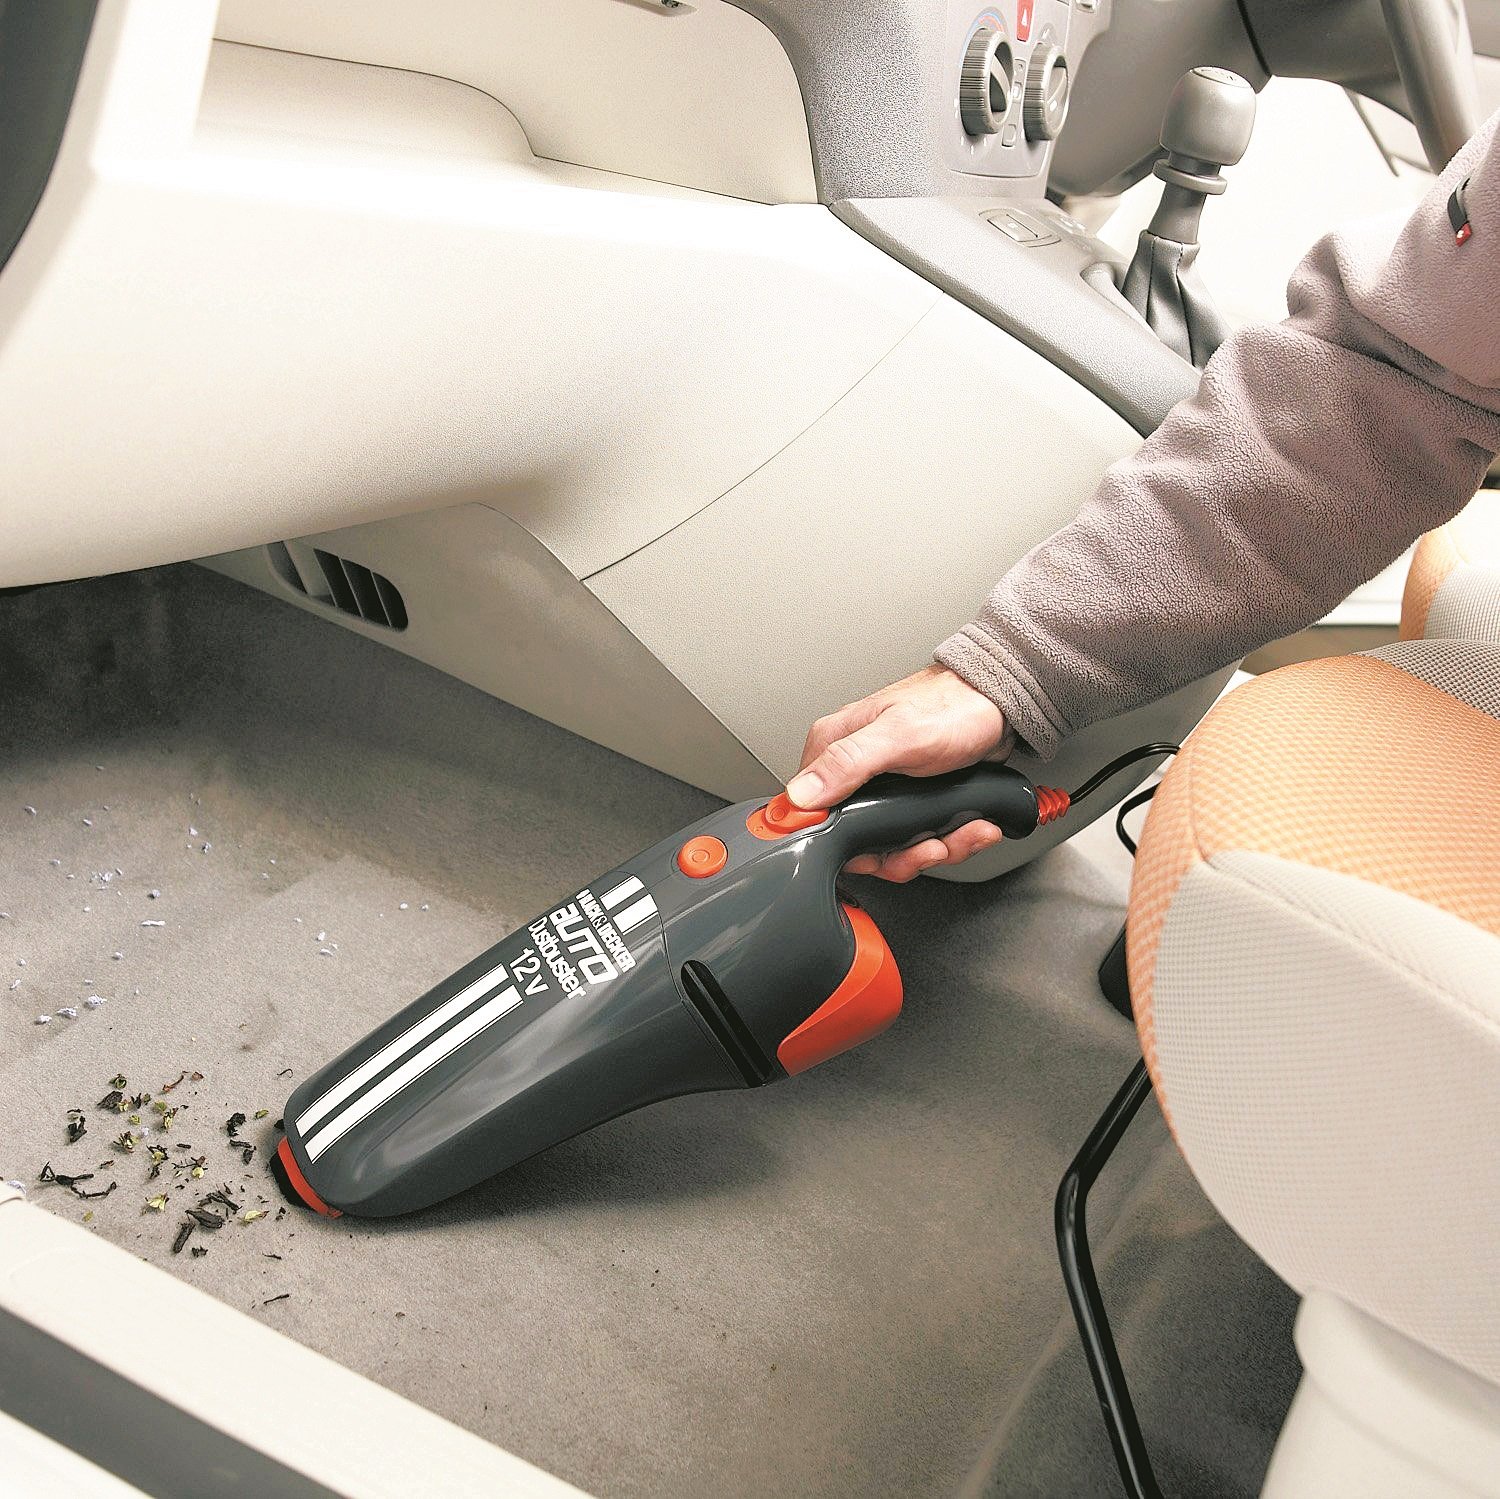 车内粉尘宜定期清洁，否则日久对空调系统不利。